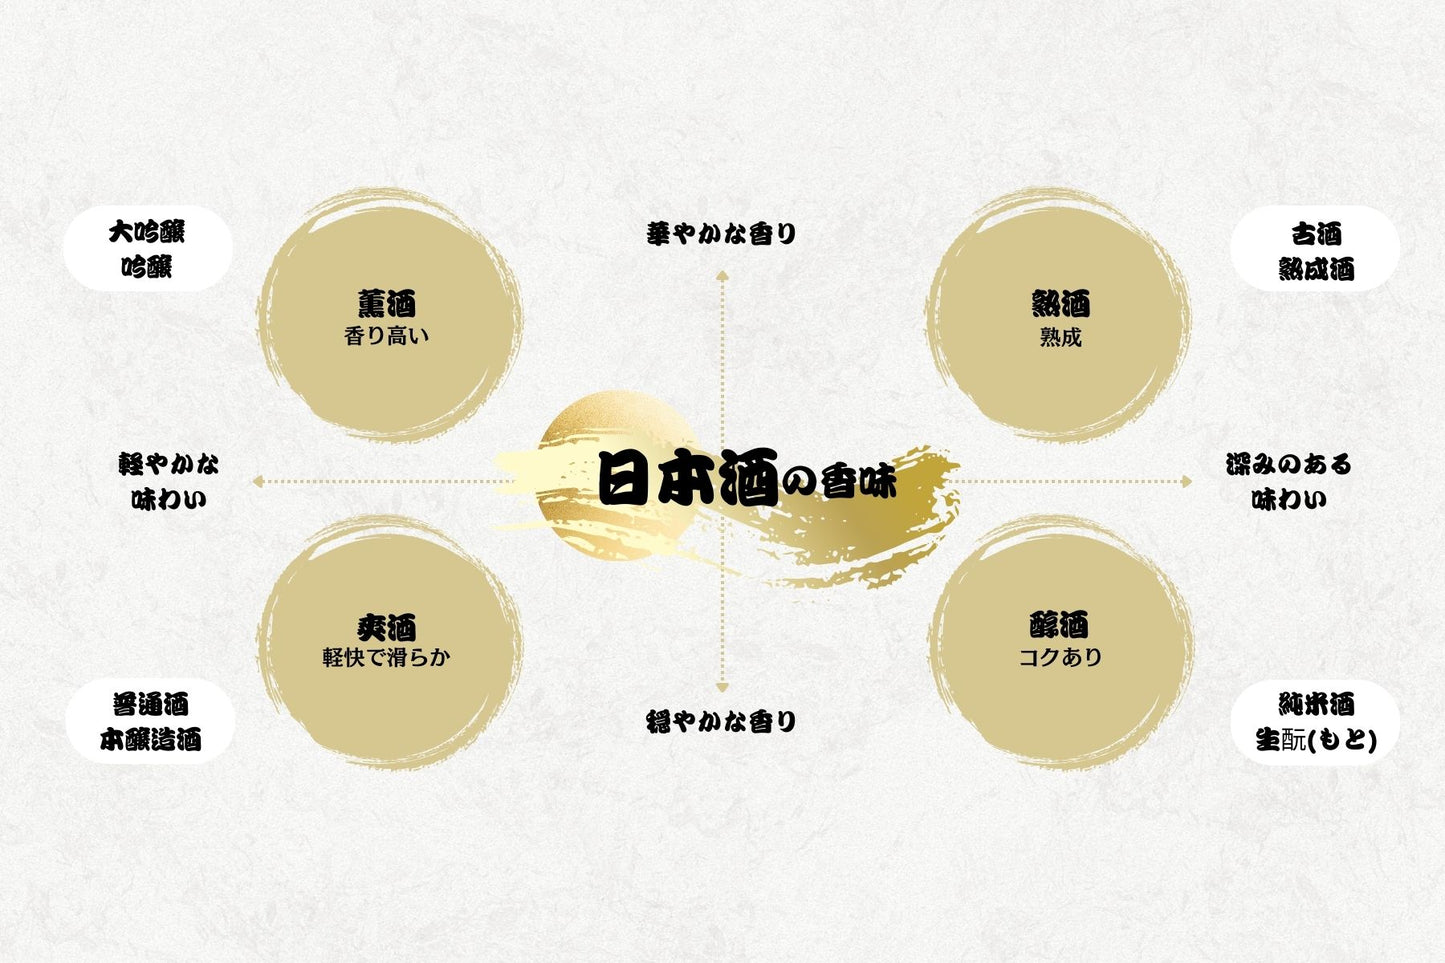 白神山地の四季 特別純米酒 720ml (52006)